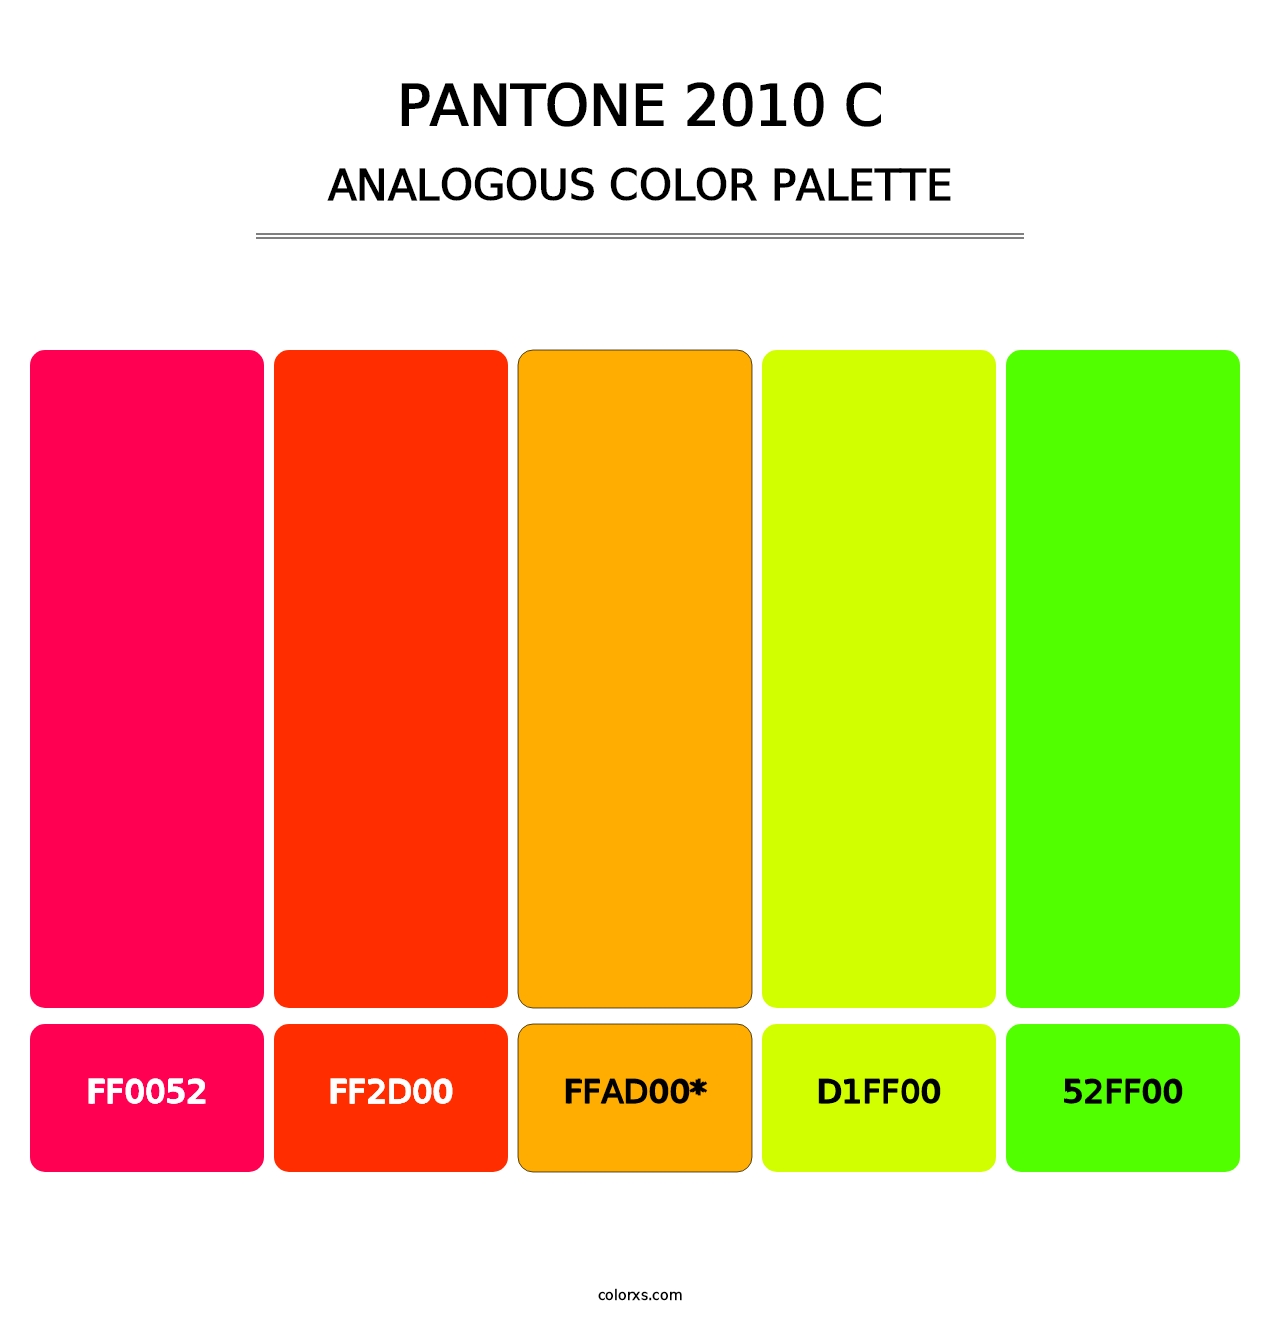 PANTONE 2010 C - Analogous Color Palette